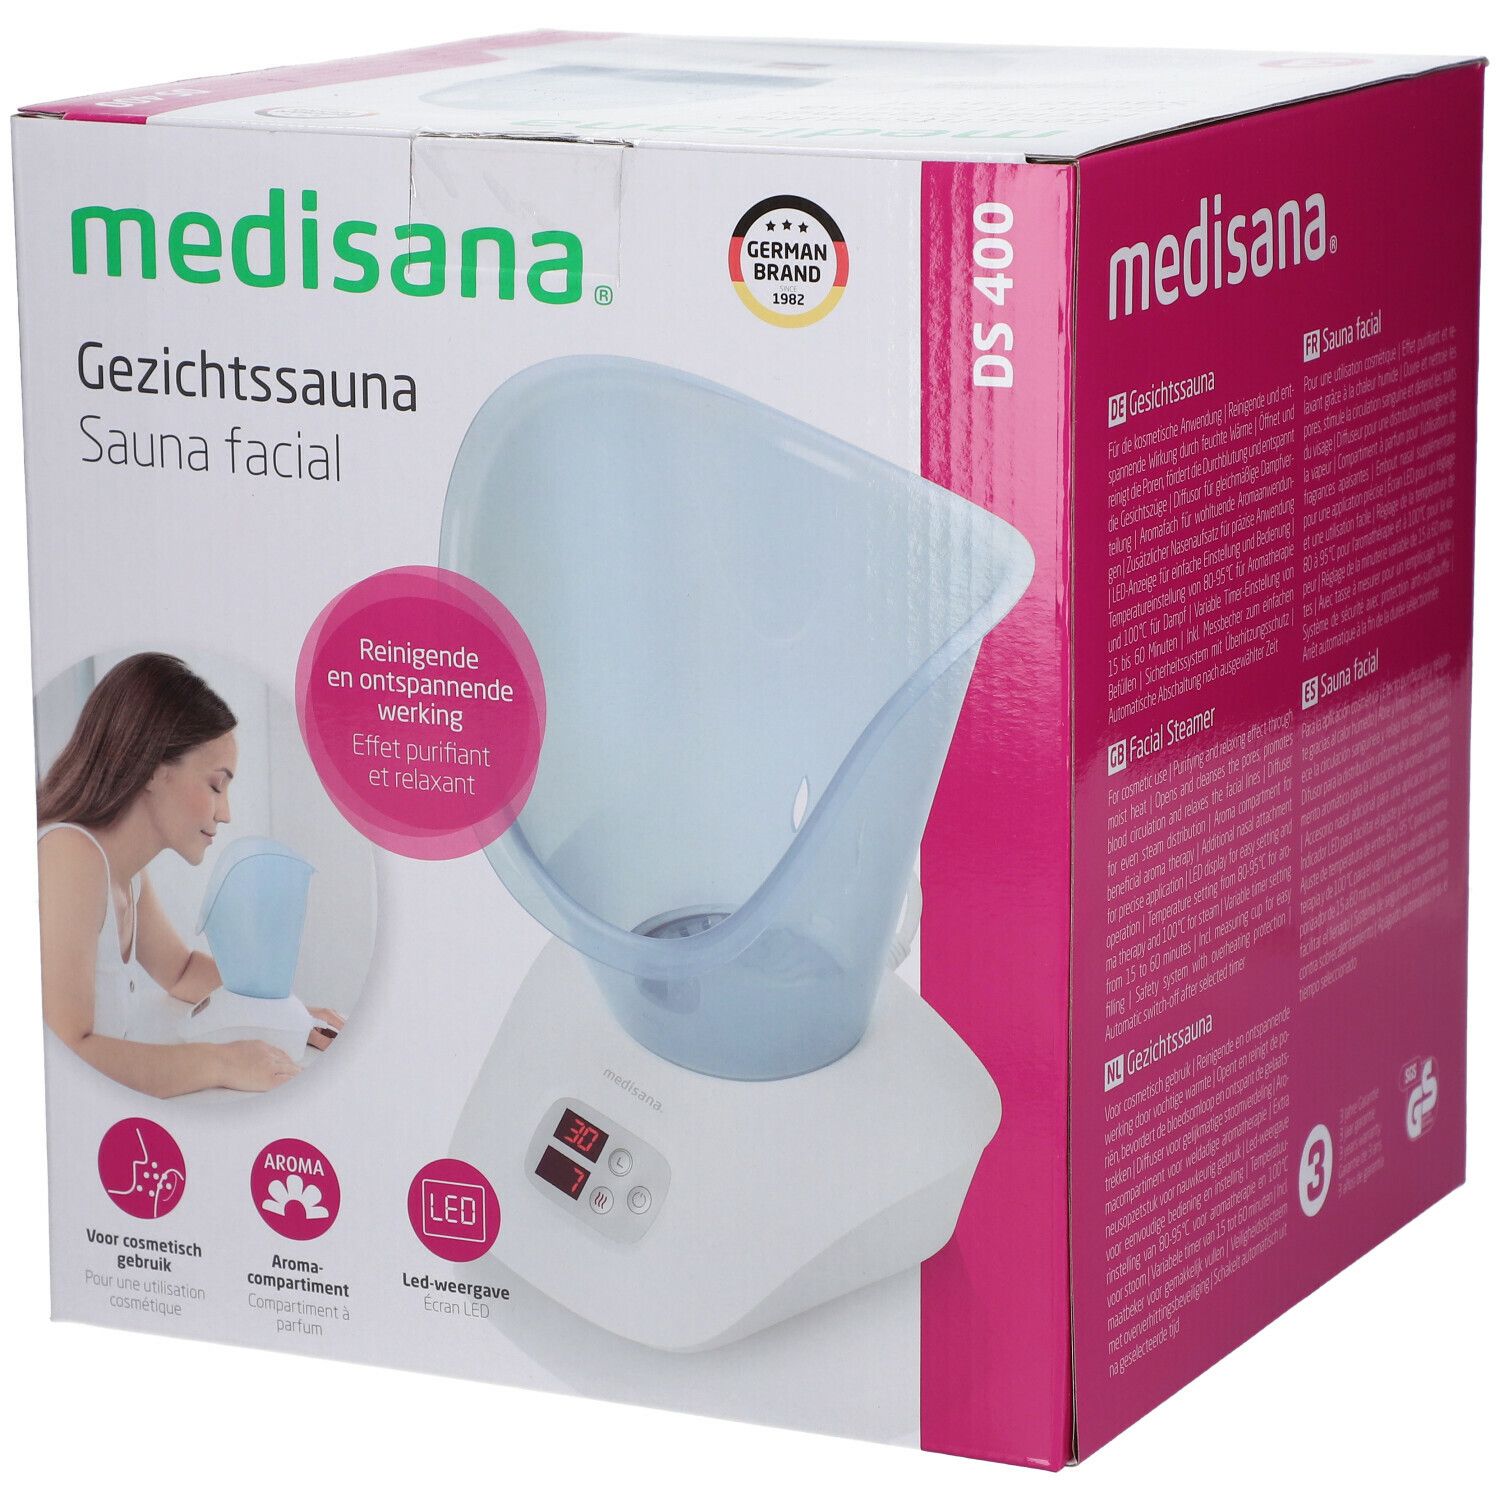 medisana® Sauna Facial Ds400